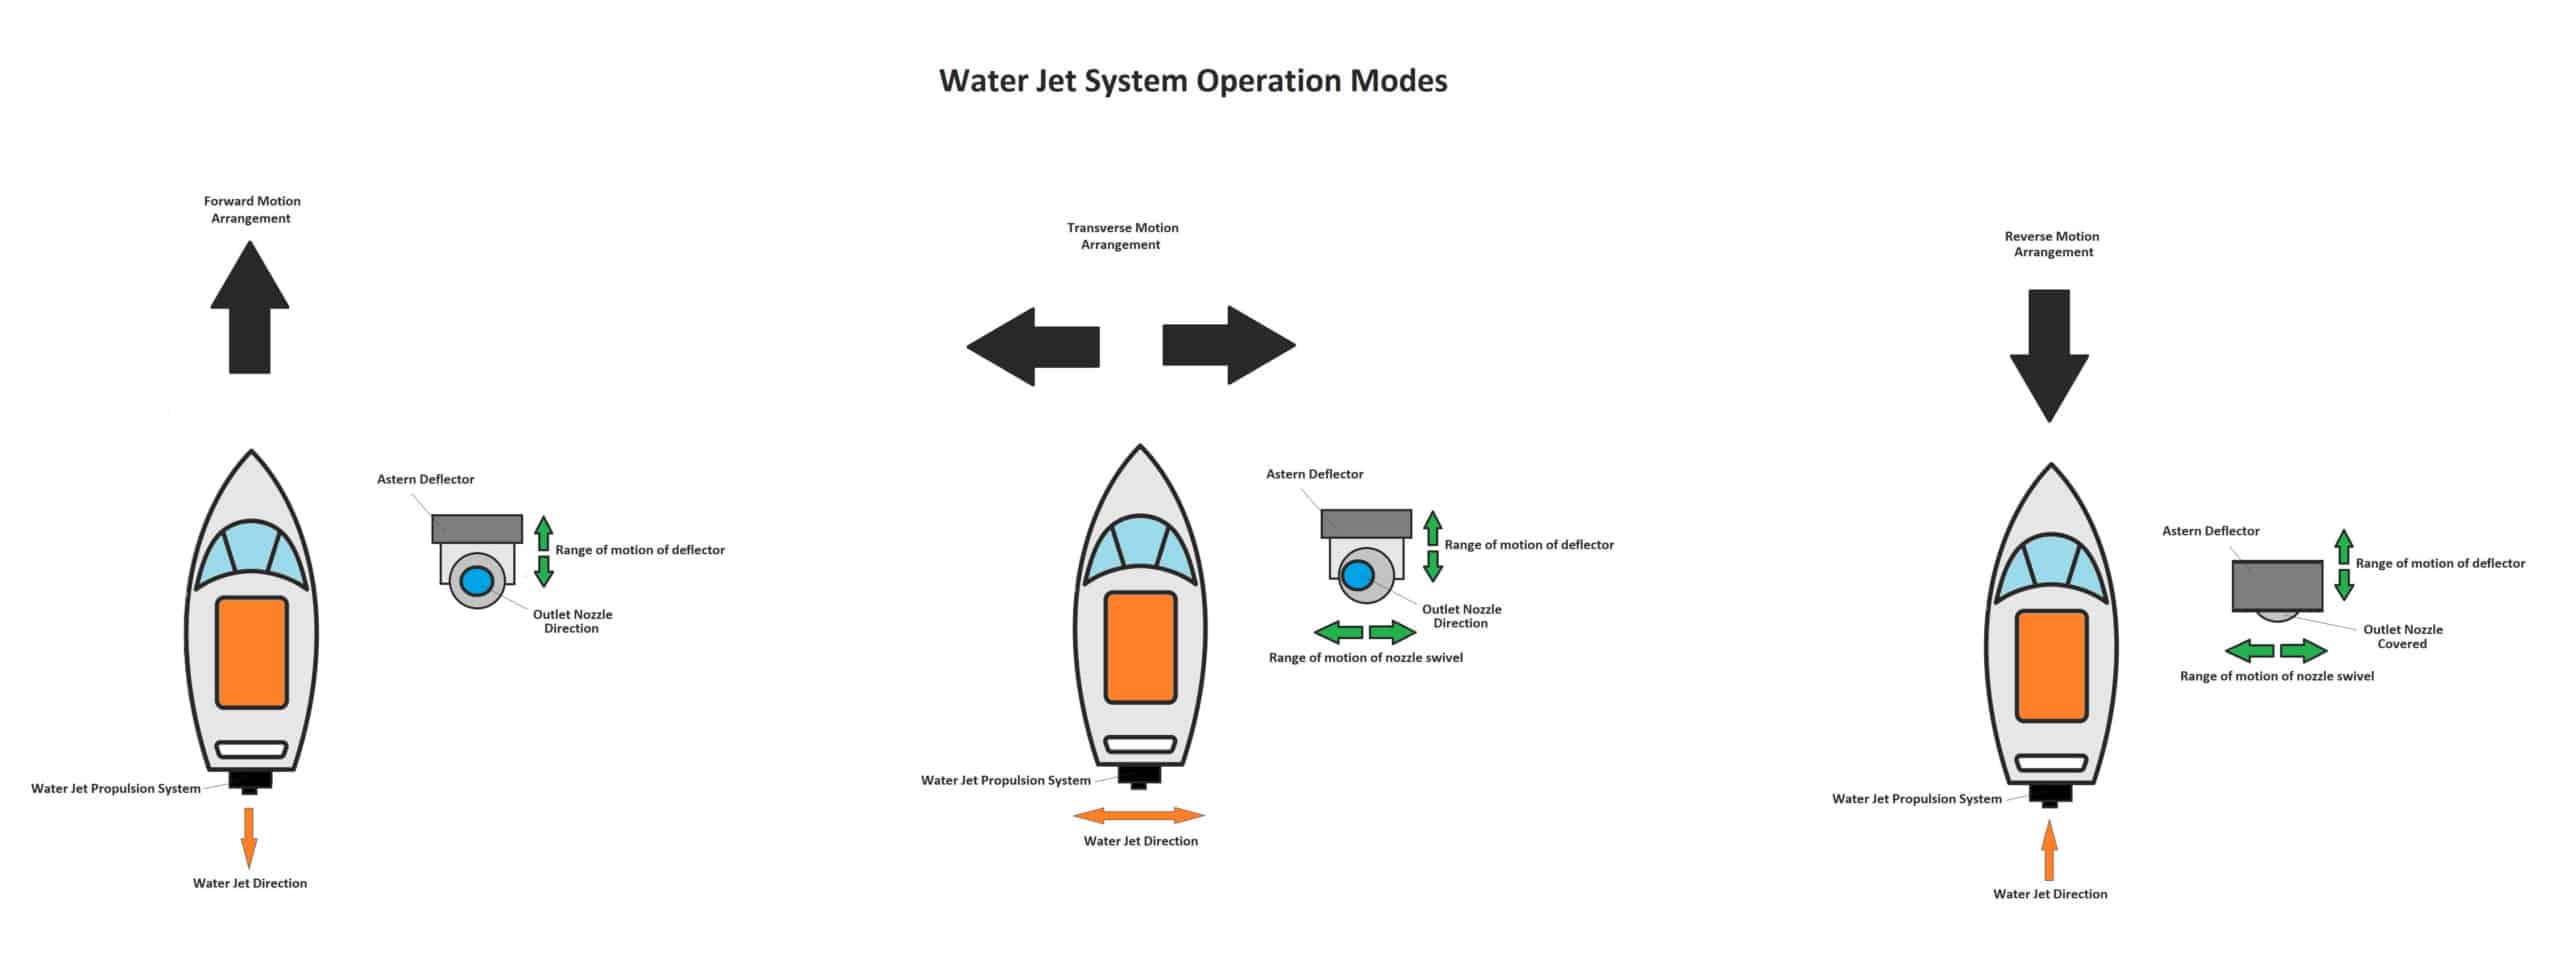 Understanding Water Jet Propulsion